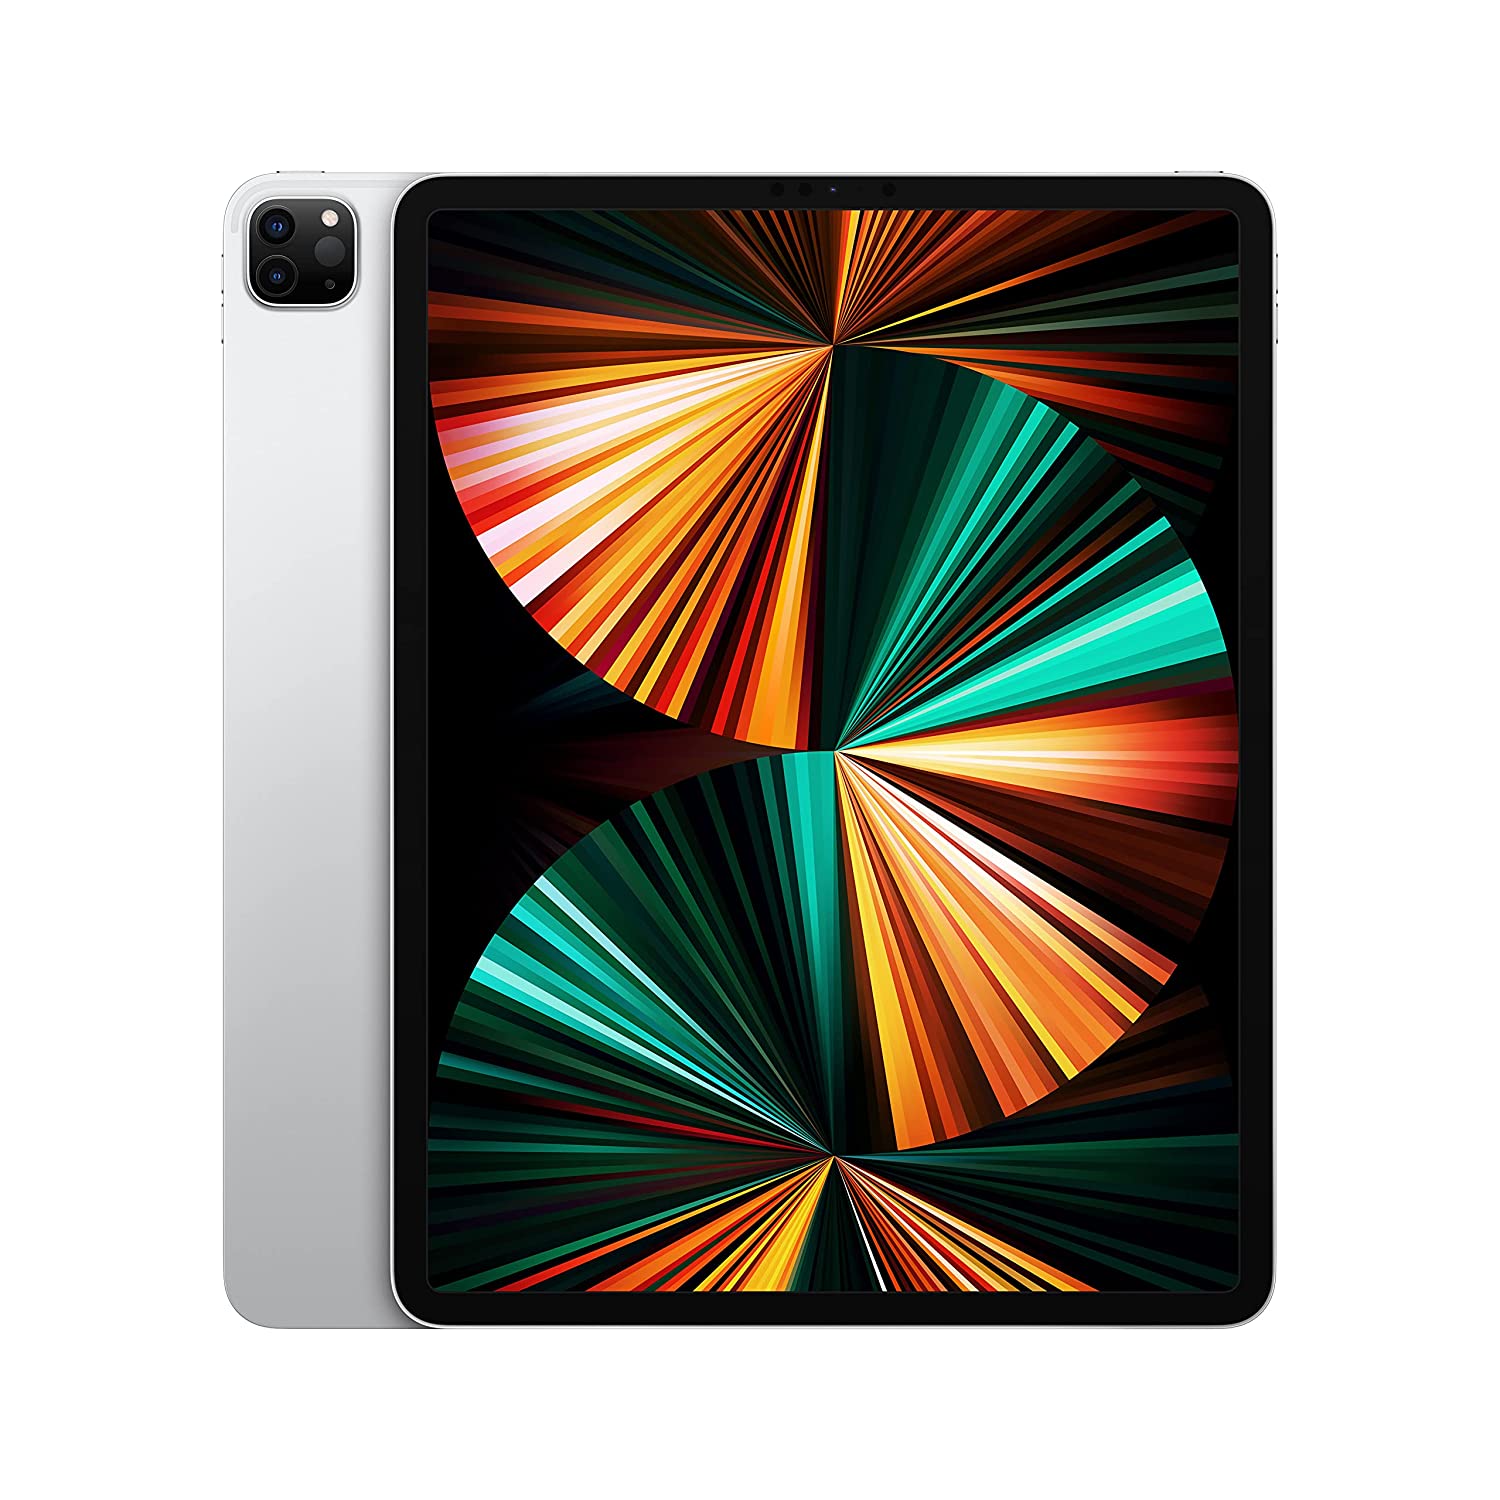 Apple 12.9-inch iPad Pro 2021 (Wi-Fi, 256GB) M1 Chip - (5th Generation)